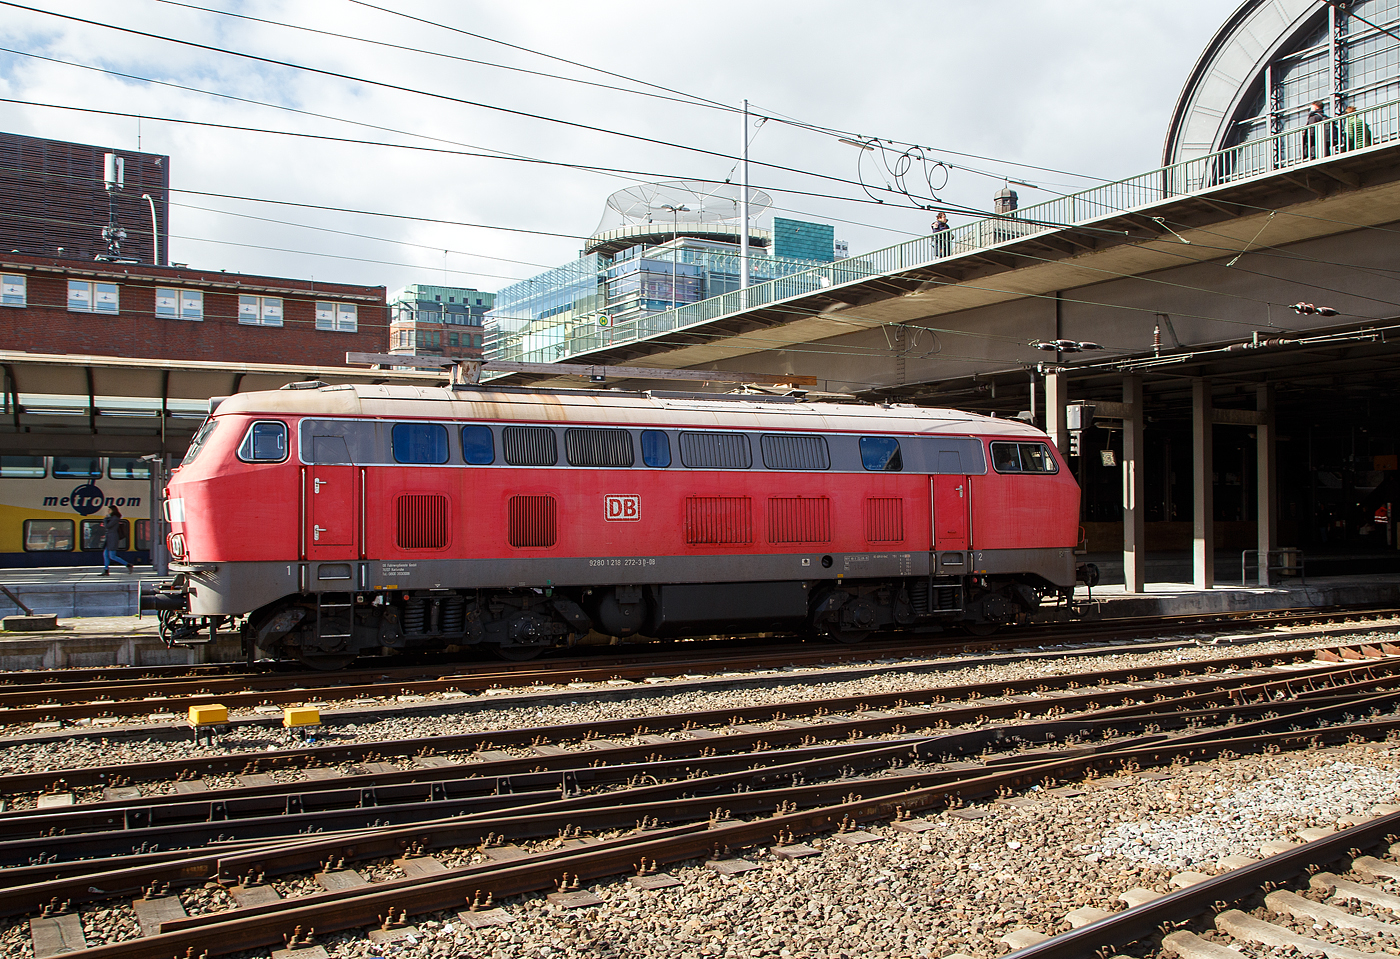 Die DB 218 272-3 (92 80 1218 272-3 D-DB) fährt am 19.03.2019 durch den Hbf Hamburg. 

Die Lok wurde 1973 von Henschel & Sohn in Kassel unter der Fabriknummer 31749 gebaut.